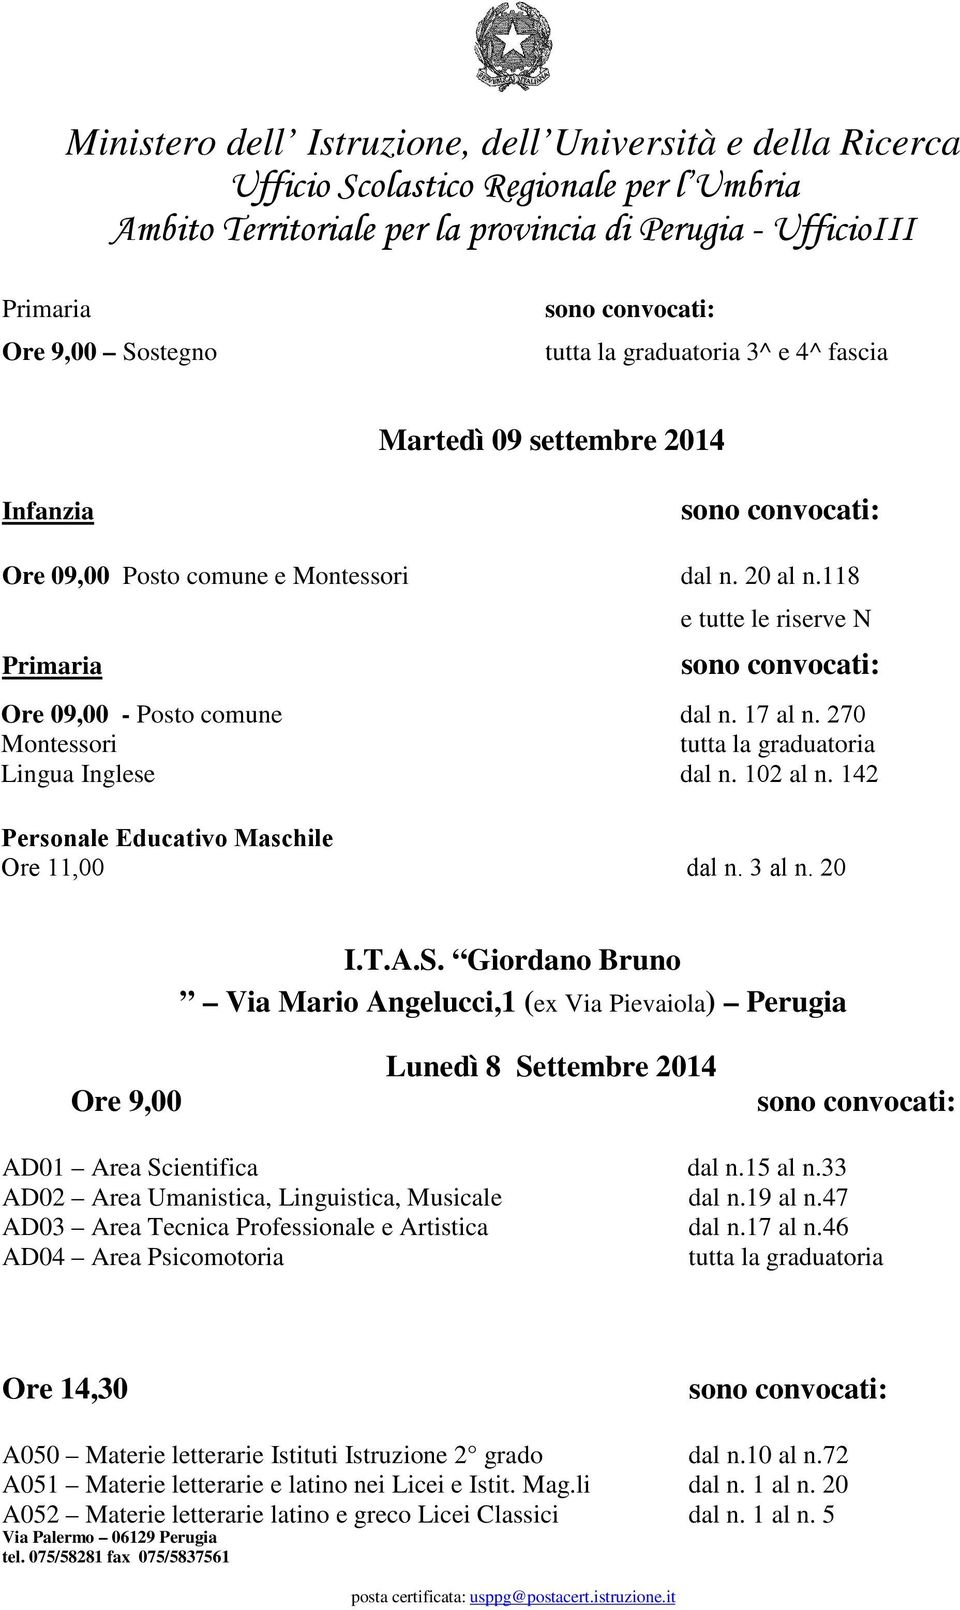 Giordano Bruno Via Mario Angelucci,1 (ex Via Pievaiola) Perugia Lunedì 8 Settembre 2014 AD01 Area Scientifica dal n.15 al n.33 AD02 Area Umanistica, Linguistica, Musicale dal n.19 al n.